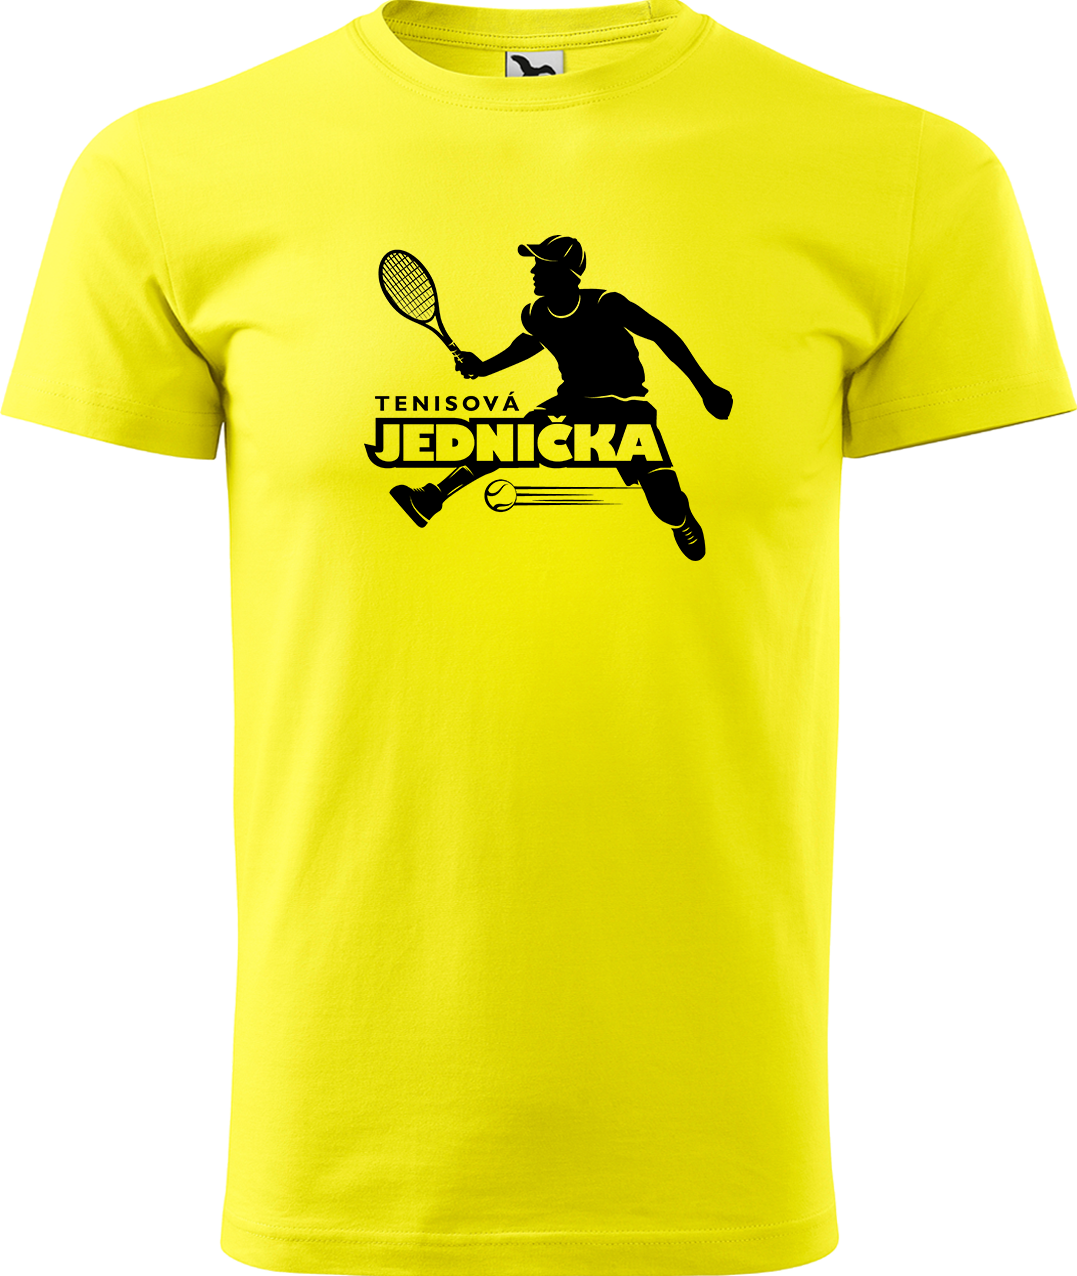 Tenisové tričko - Tenisová jednička Velikost: L, Barva: Žlutá (04)